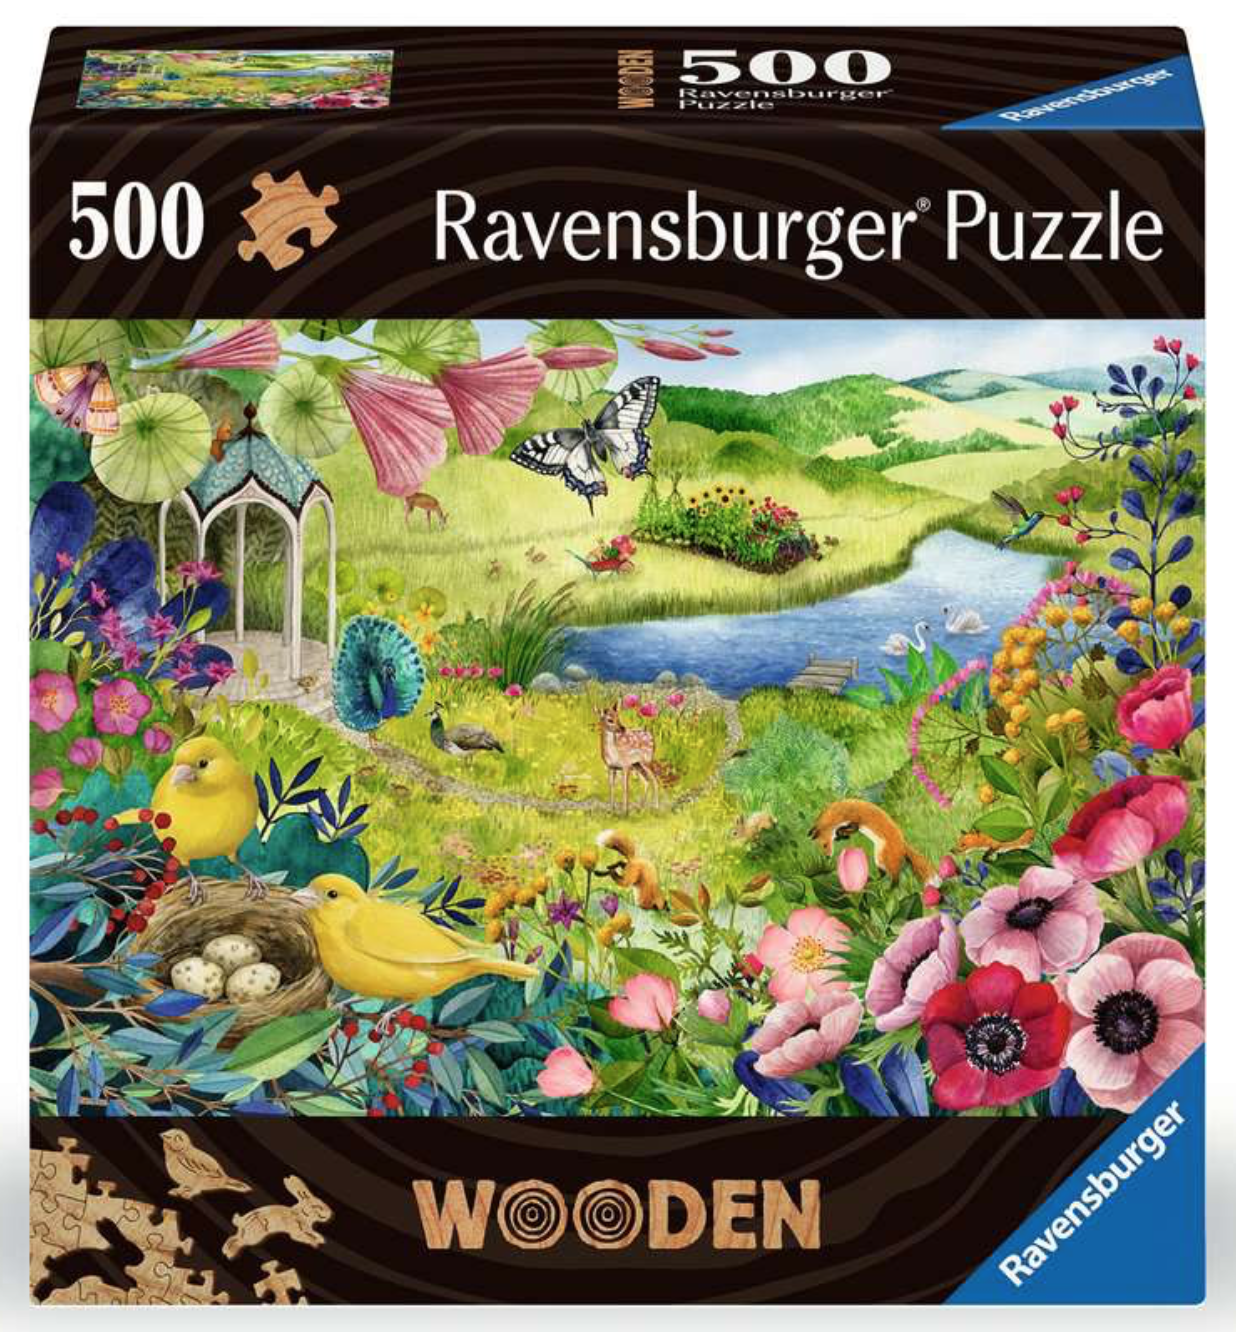 Puzzle - Whale - 150 Pieces 1 item